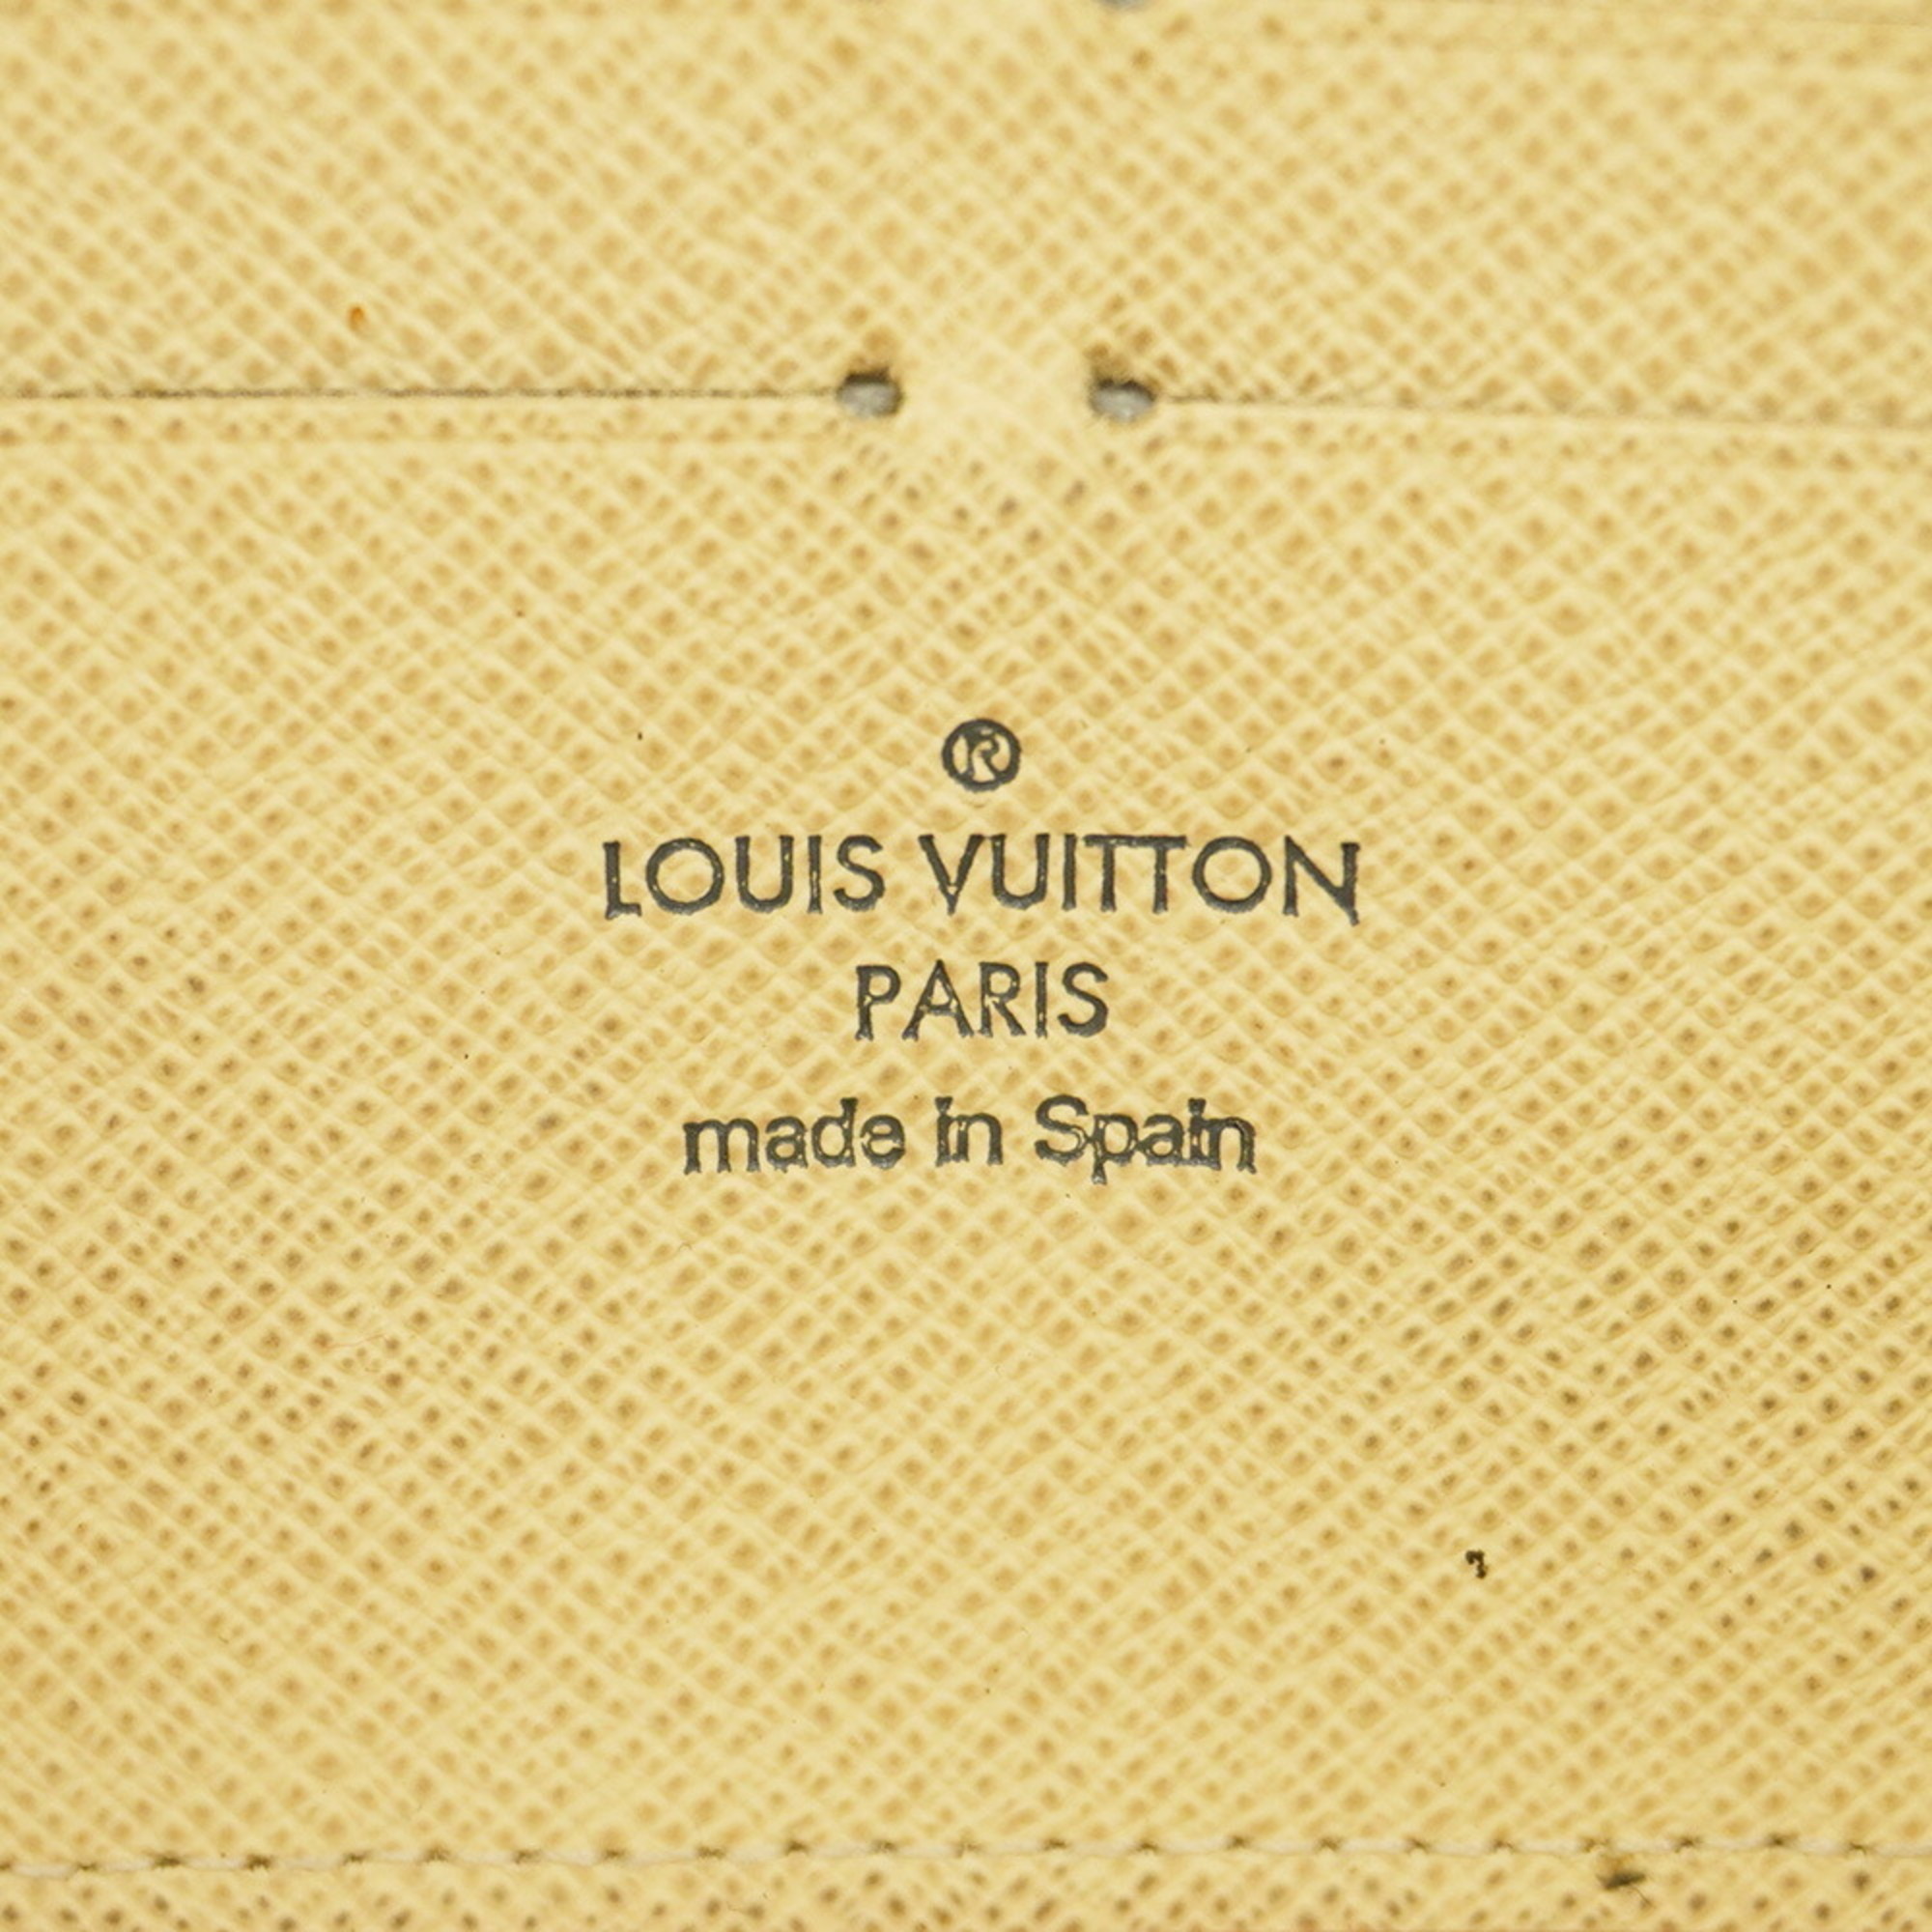 ルイ・ヴィトン(Louis Vuitton) ルイ・ヴィトン 長財布 ダミエ・アズール ジッピーウォレット N60019 ホワイトメンズ レディース